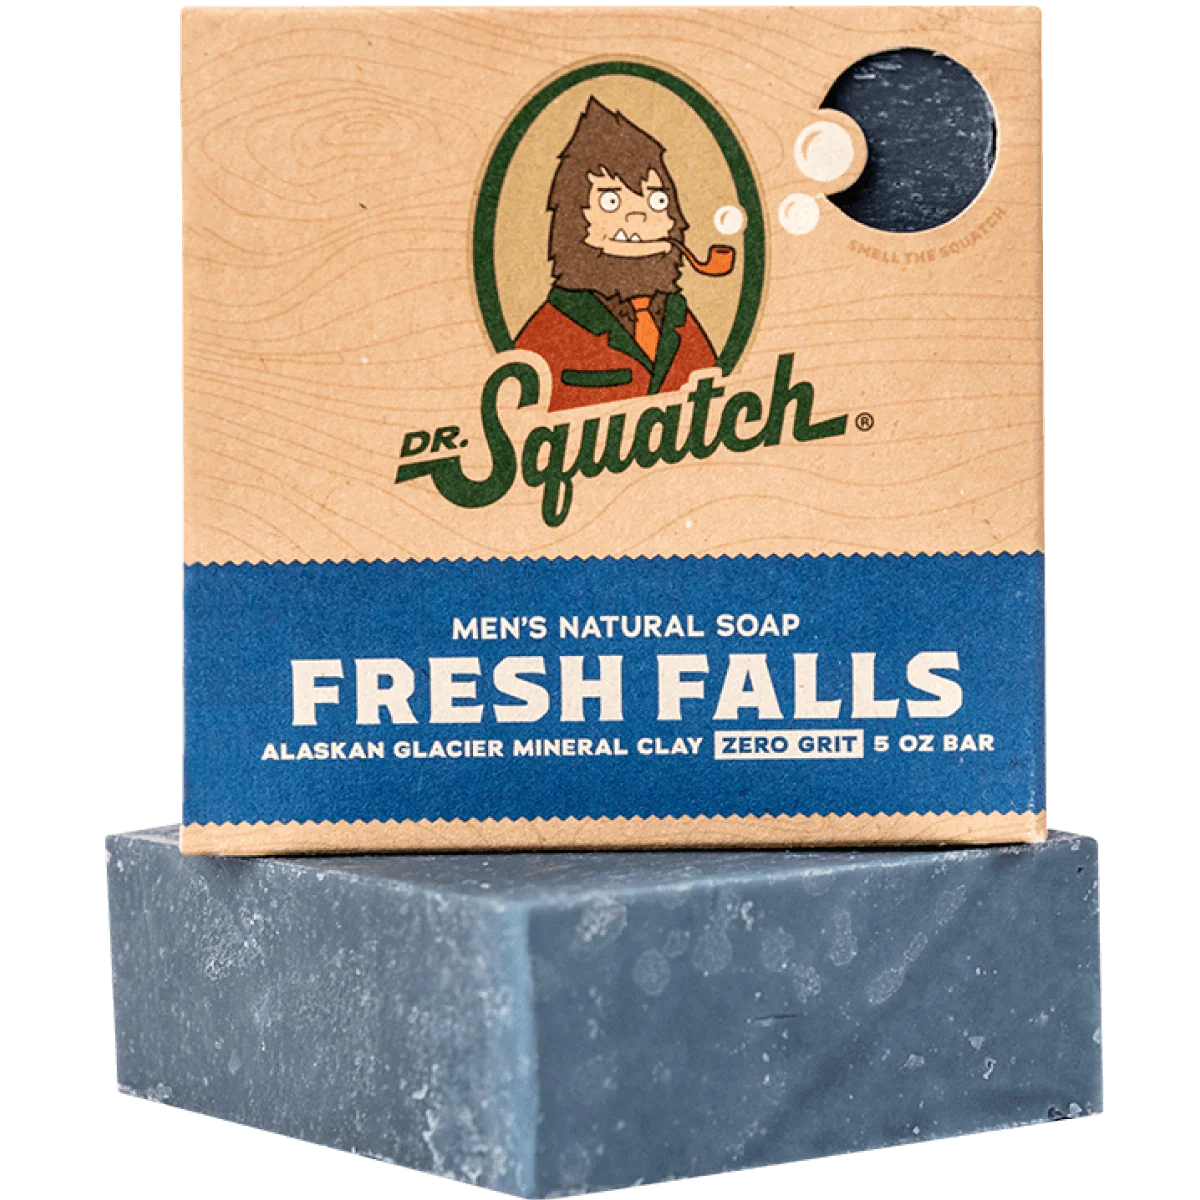 Men's Natural Soap - Fresh Falls